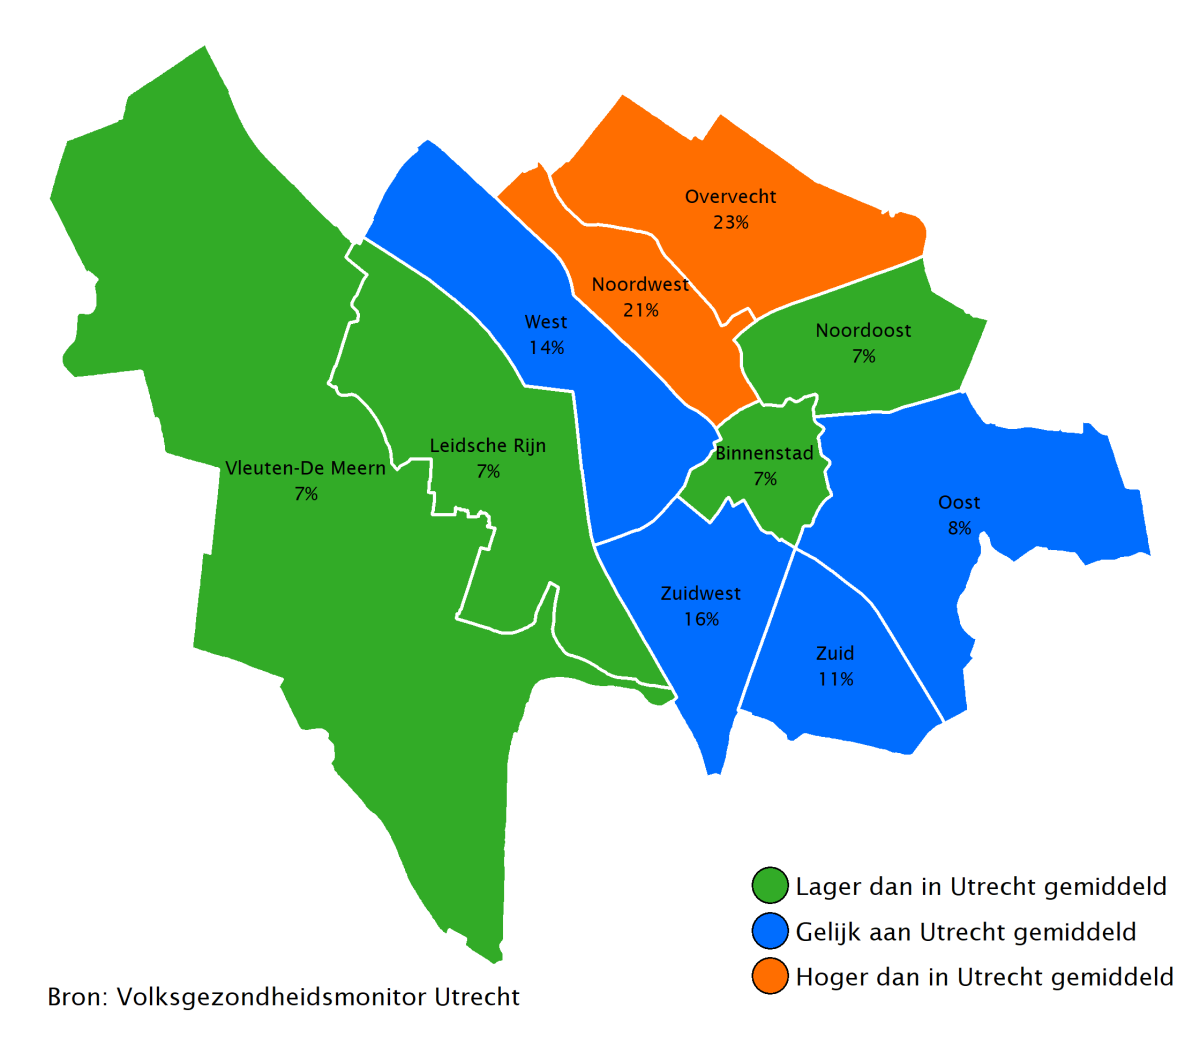 23% van de ouderen in Overvecht en 21% in Noordwest voelt zich zeer gezond. Dit is hoger dan in Utrecht gemiddeld.